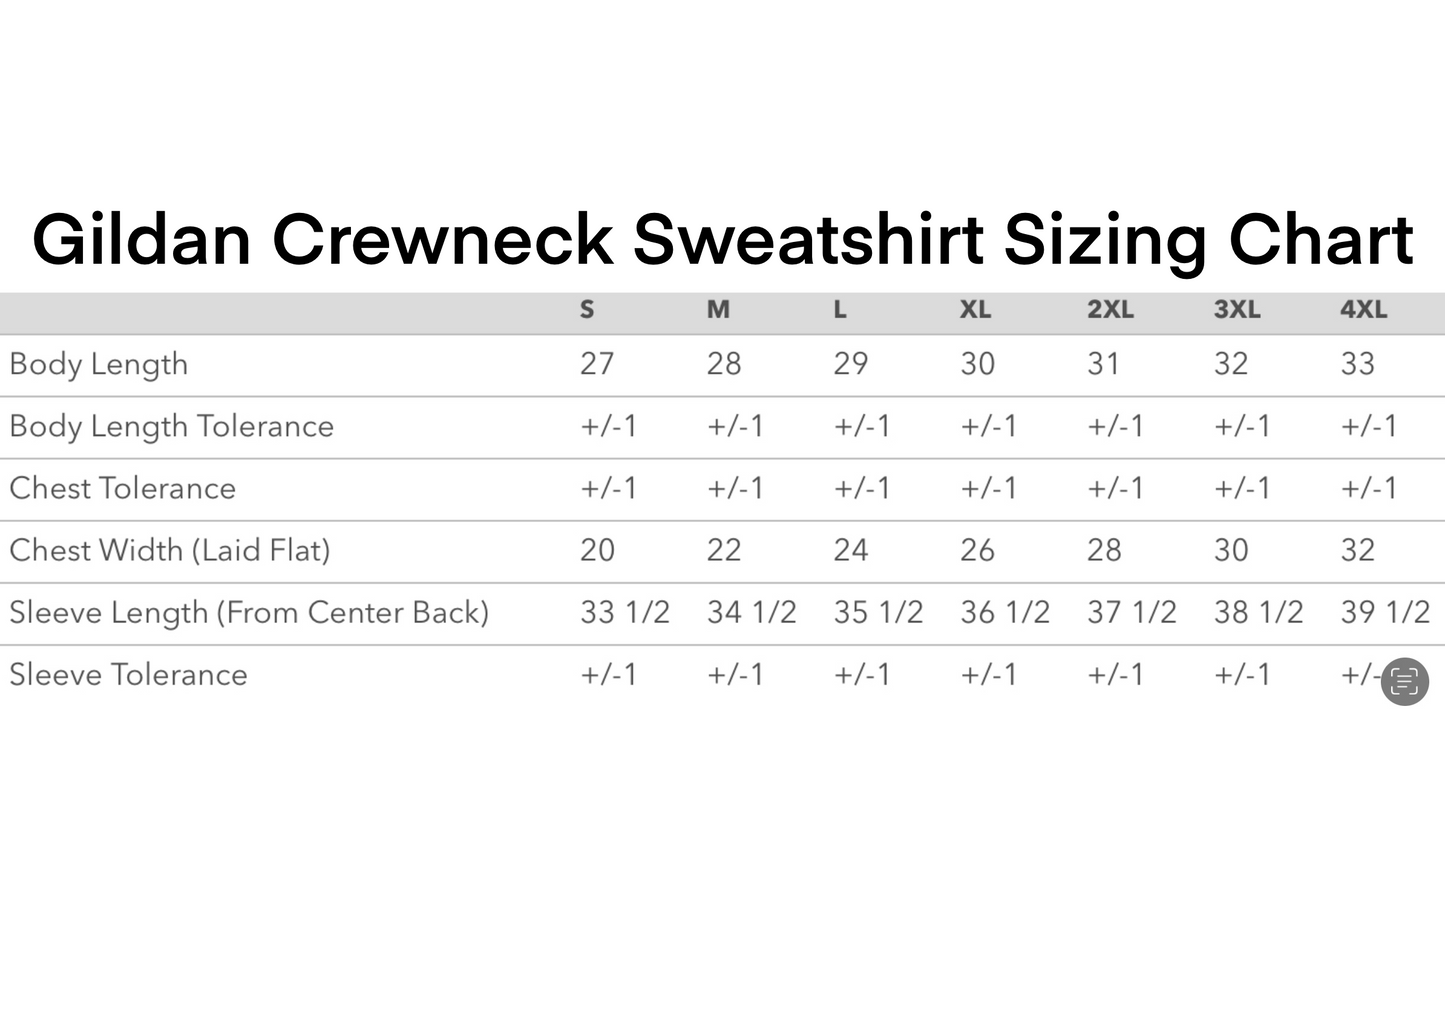 00:00 Embroidered Crewneck Sweatshirt